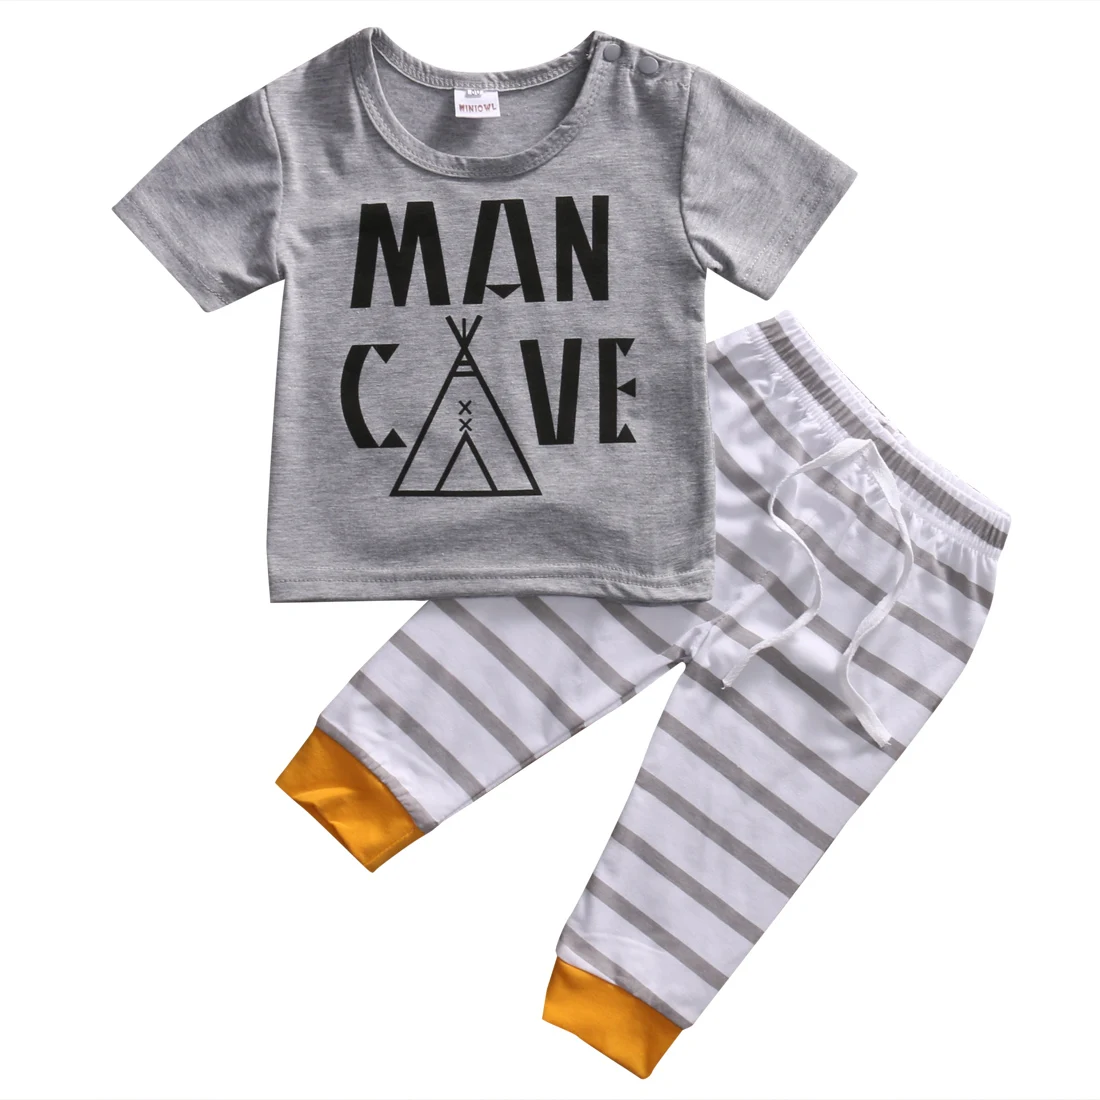 Хлопок для новорожденных Детская одежда, футболка для мальчиков топы+штаны в полоску комплект одежды Размеры 0-24 м - Цвет: Серый